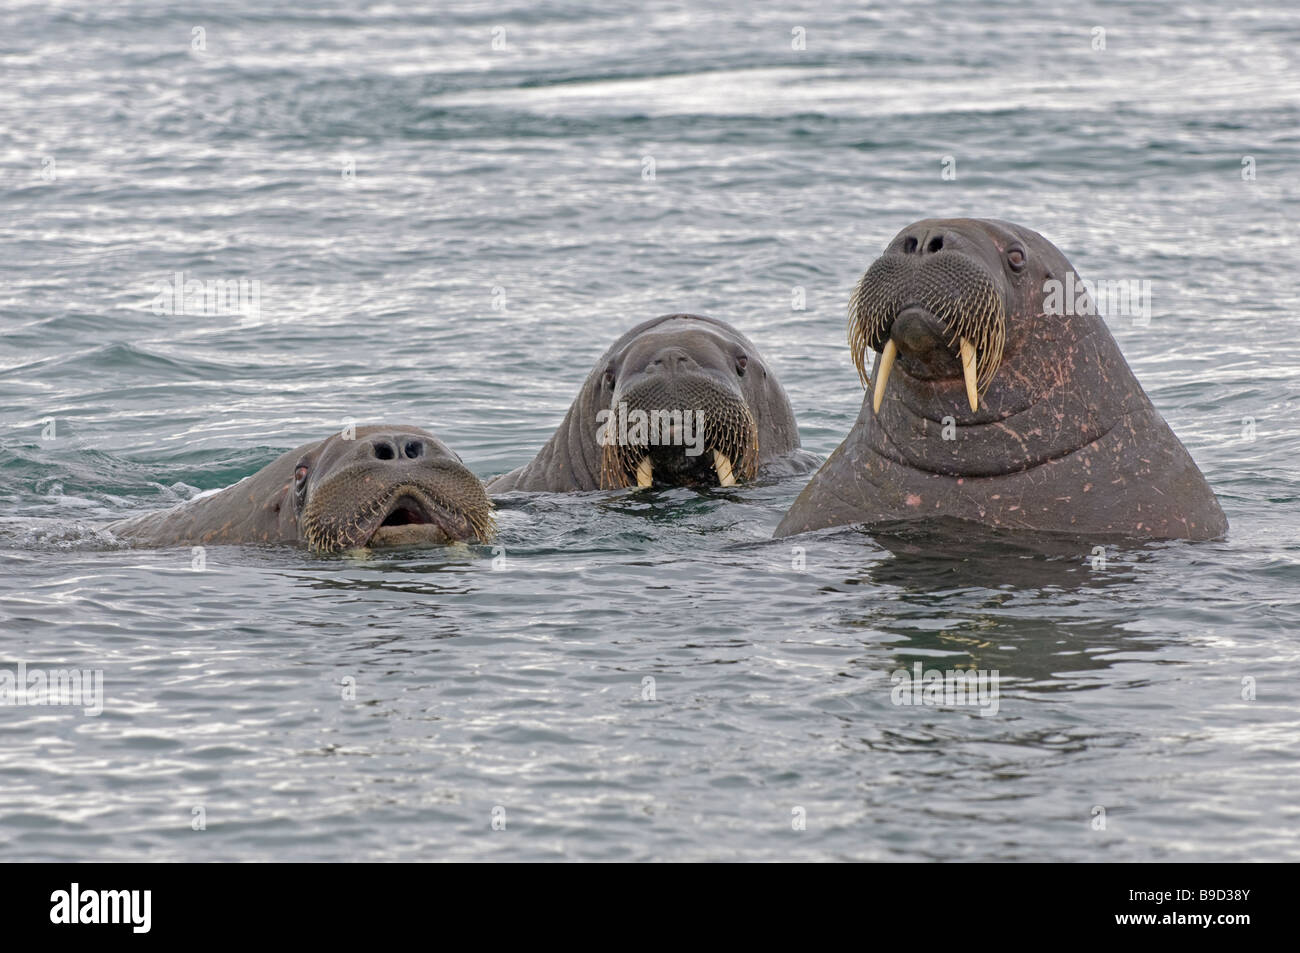 Group of curious walruses Odobenus rosmarus in sea. Spitsbergen, Svalbard. Stock Photo